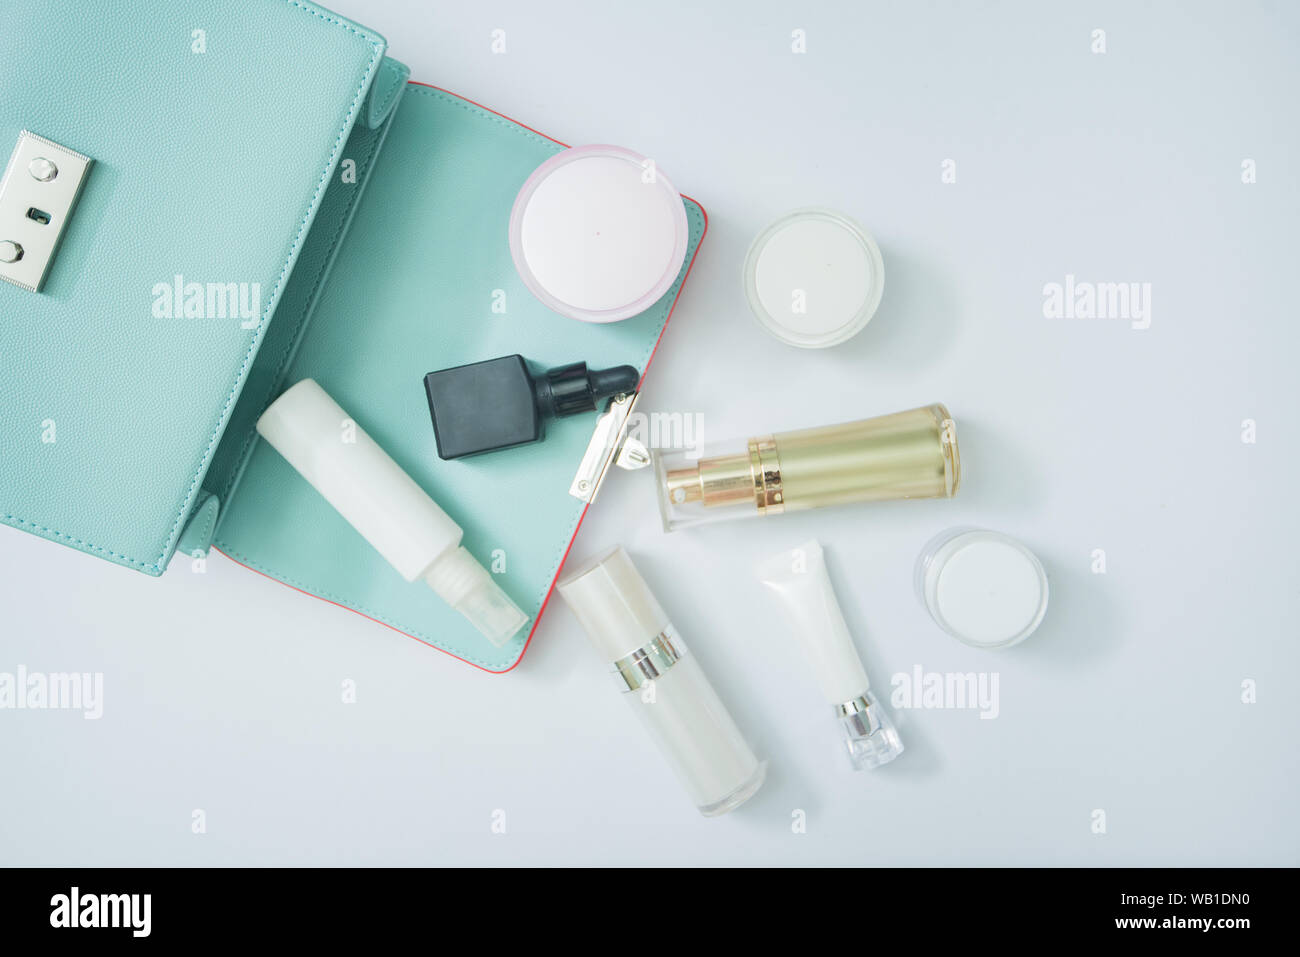 Kosmetisches Erzeugnis und Frau Beutel auf Weiß, kosmetisches Produkt isoliert Stockfoto